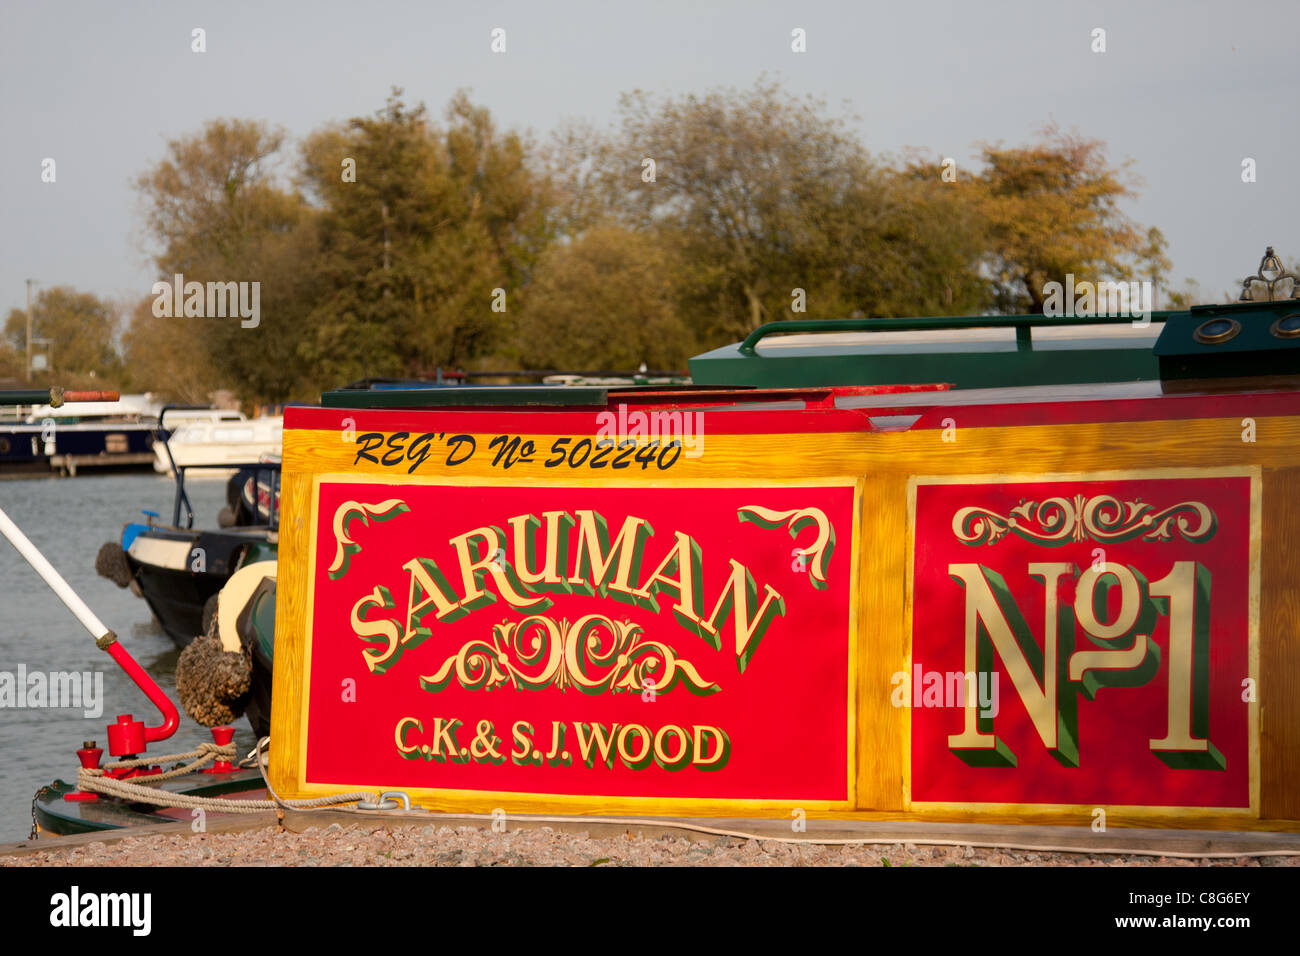 Narrowboats at Gayton Marina, Northampton Stock Photo